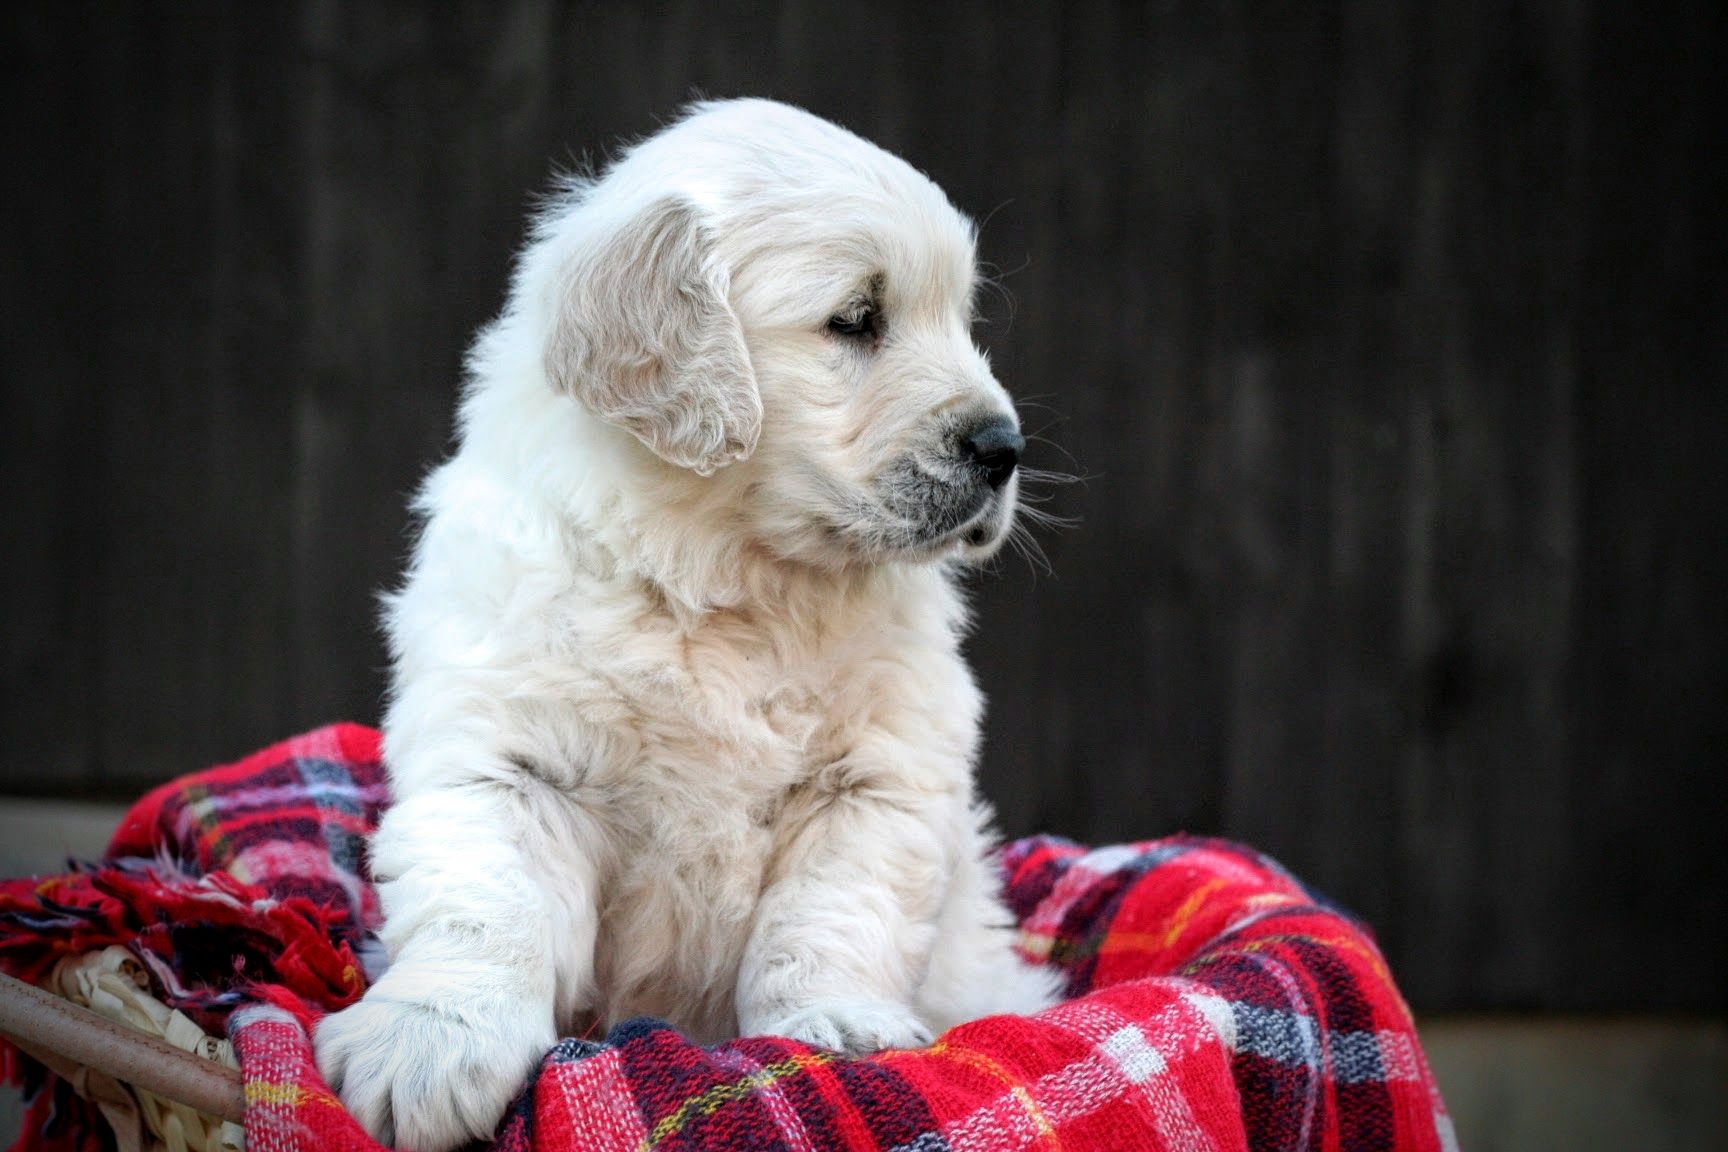 Robert Miller: Cute Golden Retriever Puppy